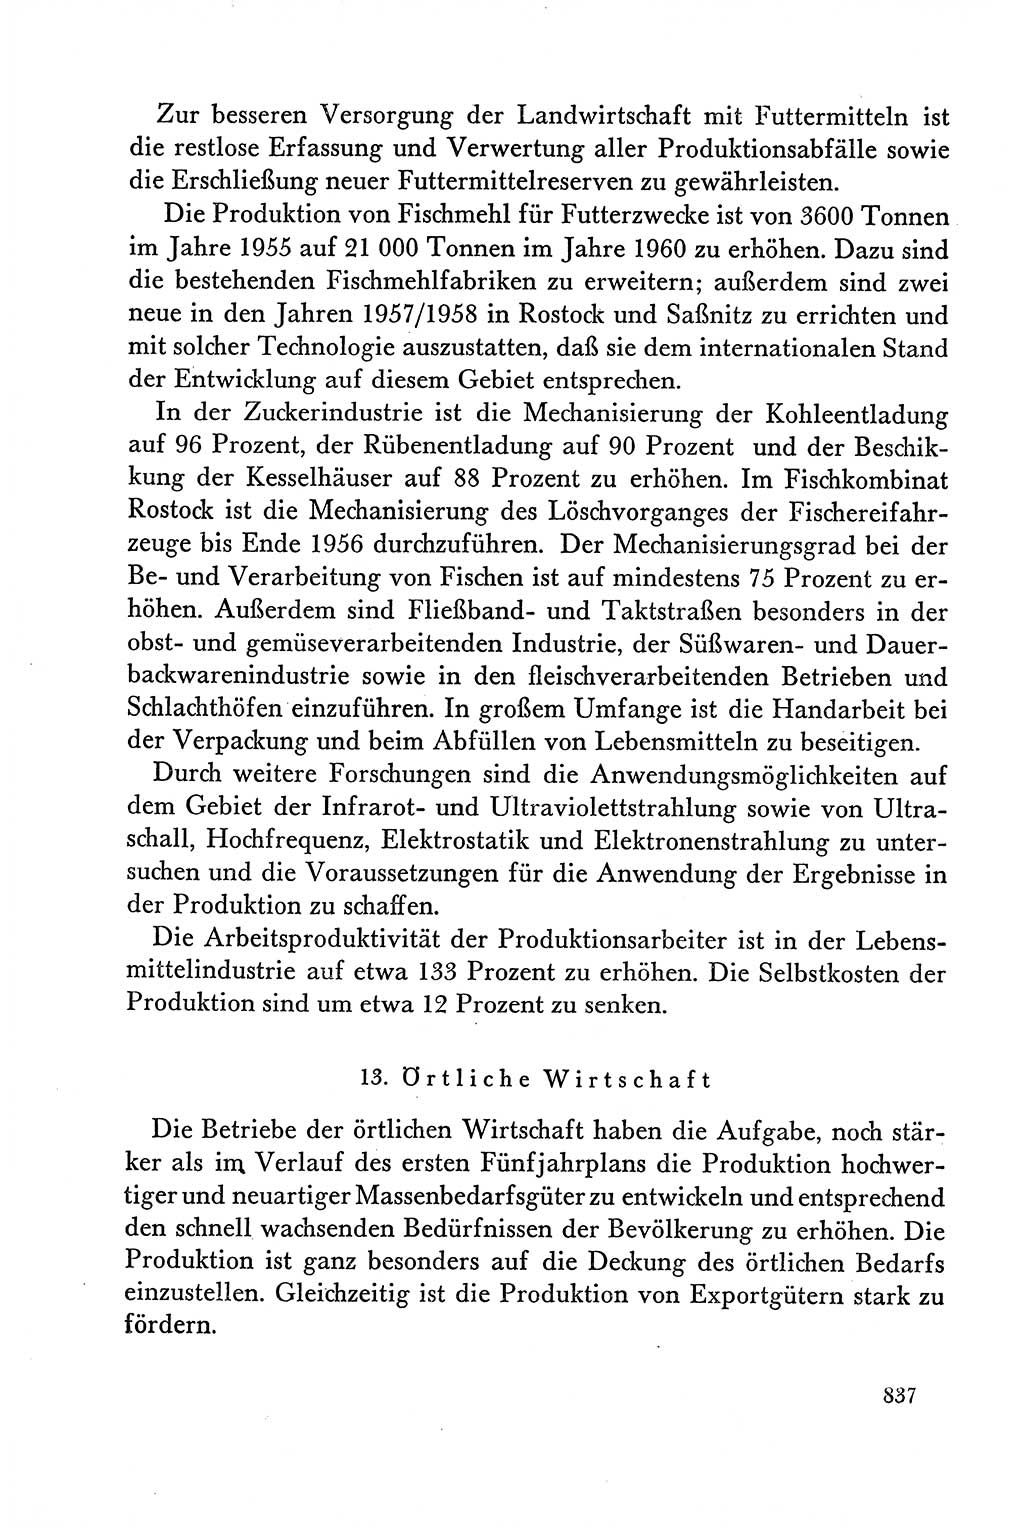 Dokumente der Sozialistischen Einheitspartei Deutschlands (SED) [Deutsche Demokratische Republik (DDR)] 1958-1959, Seite 837 (Dok. SED DDR 1958-1959, S. 837)